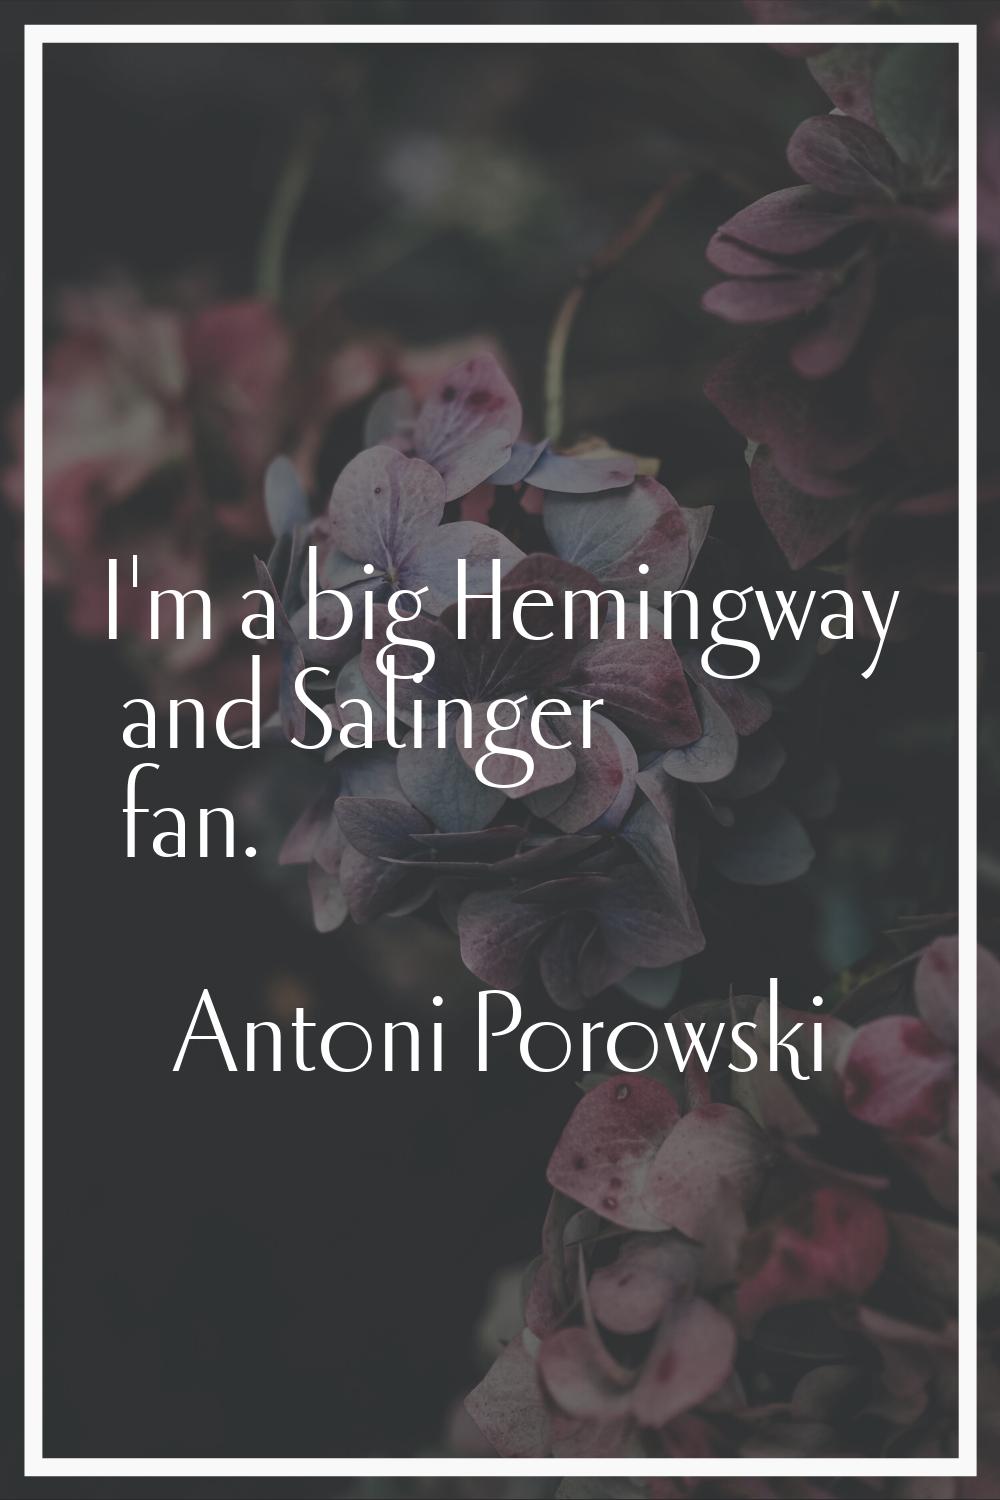 I'm a big Hemingway and Salinger fan.